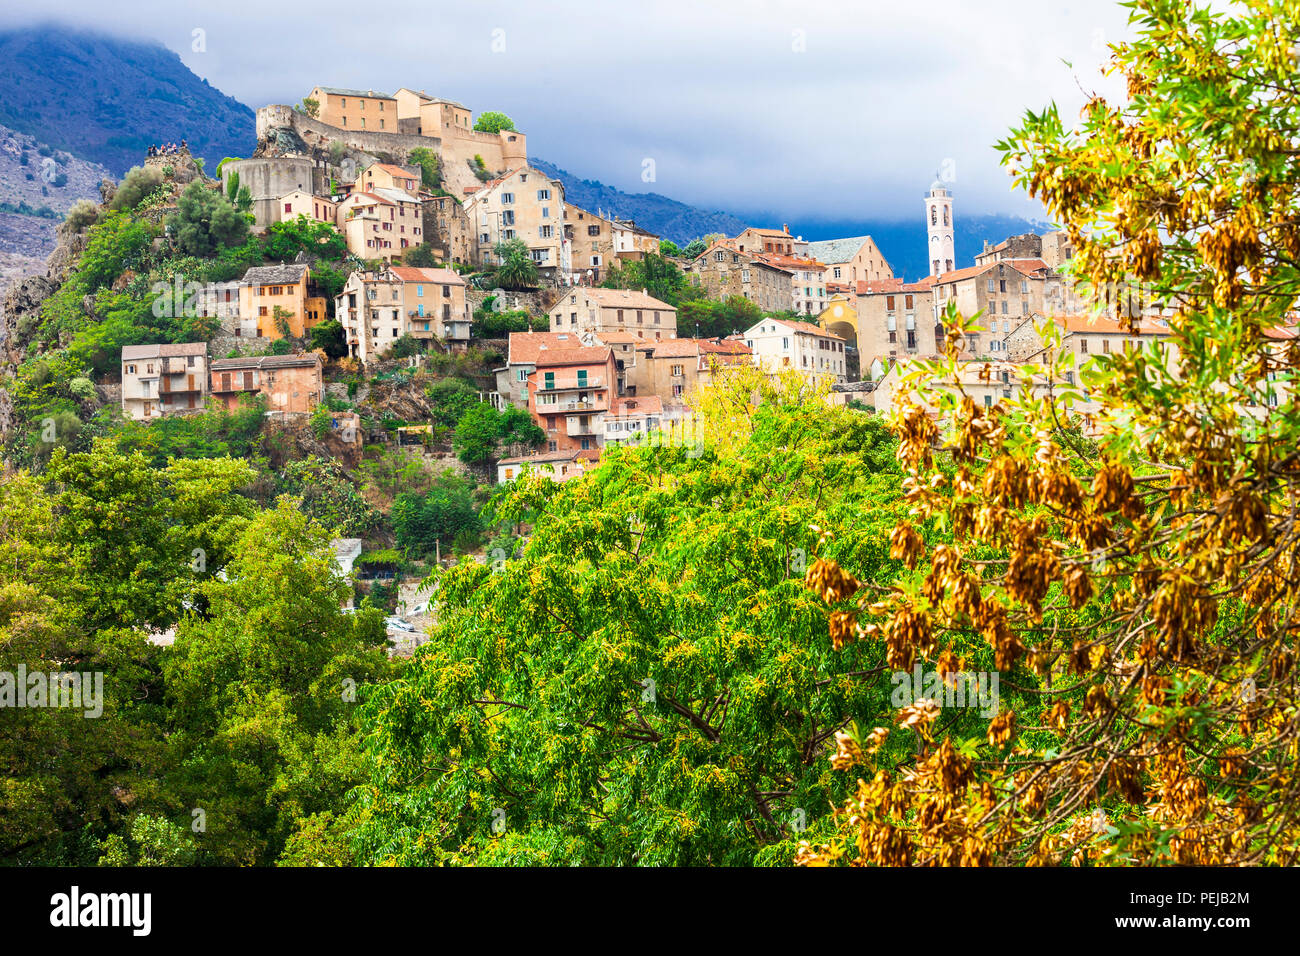 Corte impressionnant,village avec vue sur la vieille citadelle et montagnes,Corse,France. Banque D'Images